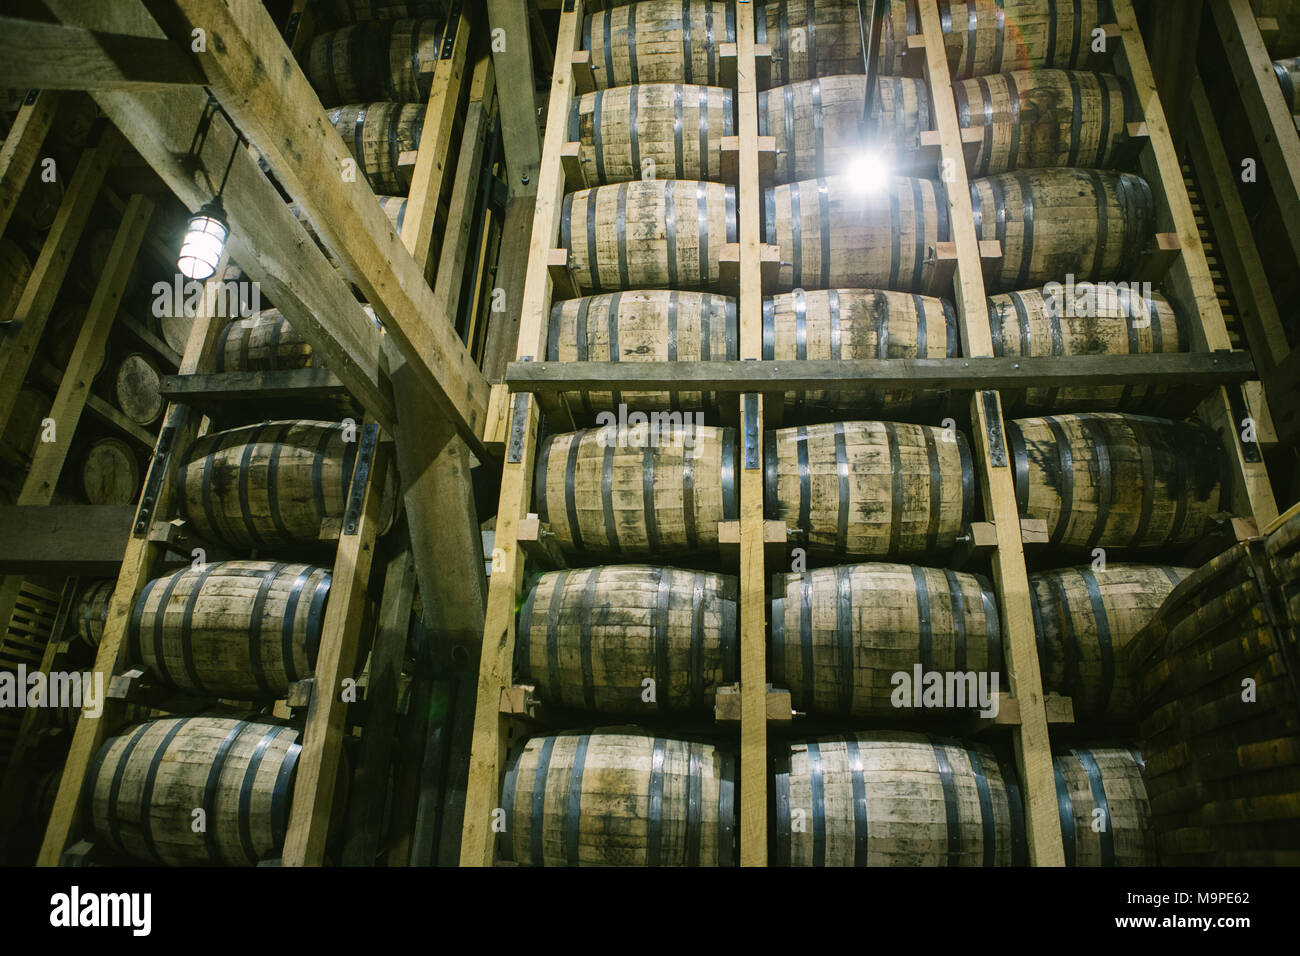 23 Februar 2018, USA, Lynchburg: Barrel der Whiskey Produzent Jack Daniel's  in einem der Zylinder Häuser gestapelt. Firmengründer Jack Daniel gründete  seine erste Brennerei im Jahre 1866. Mit der Produktion von etwa